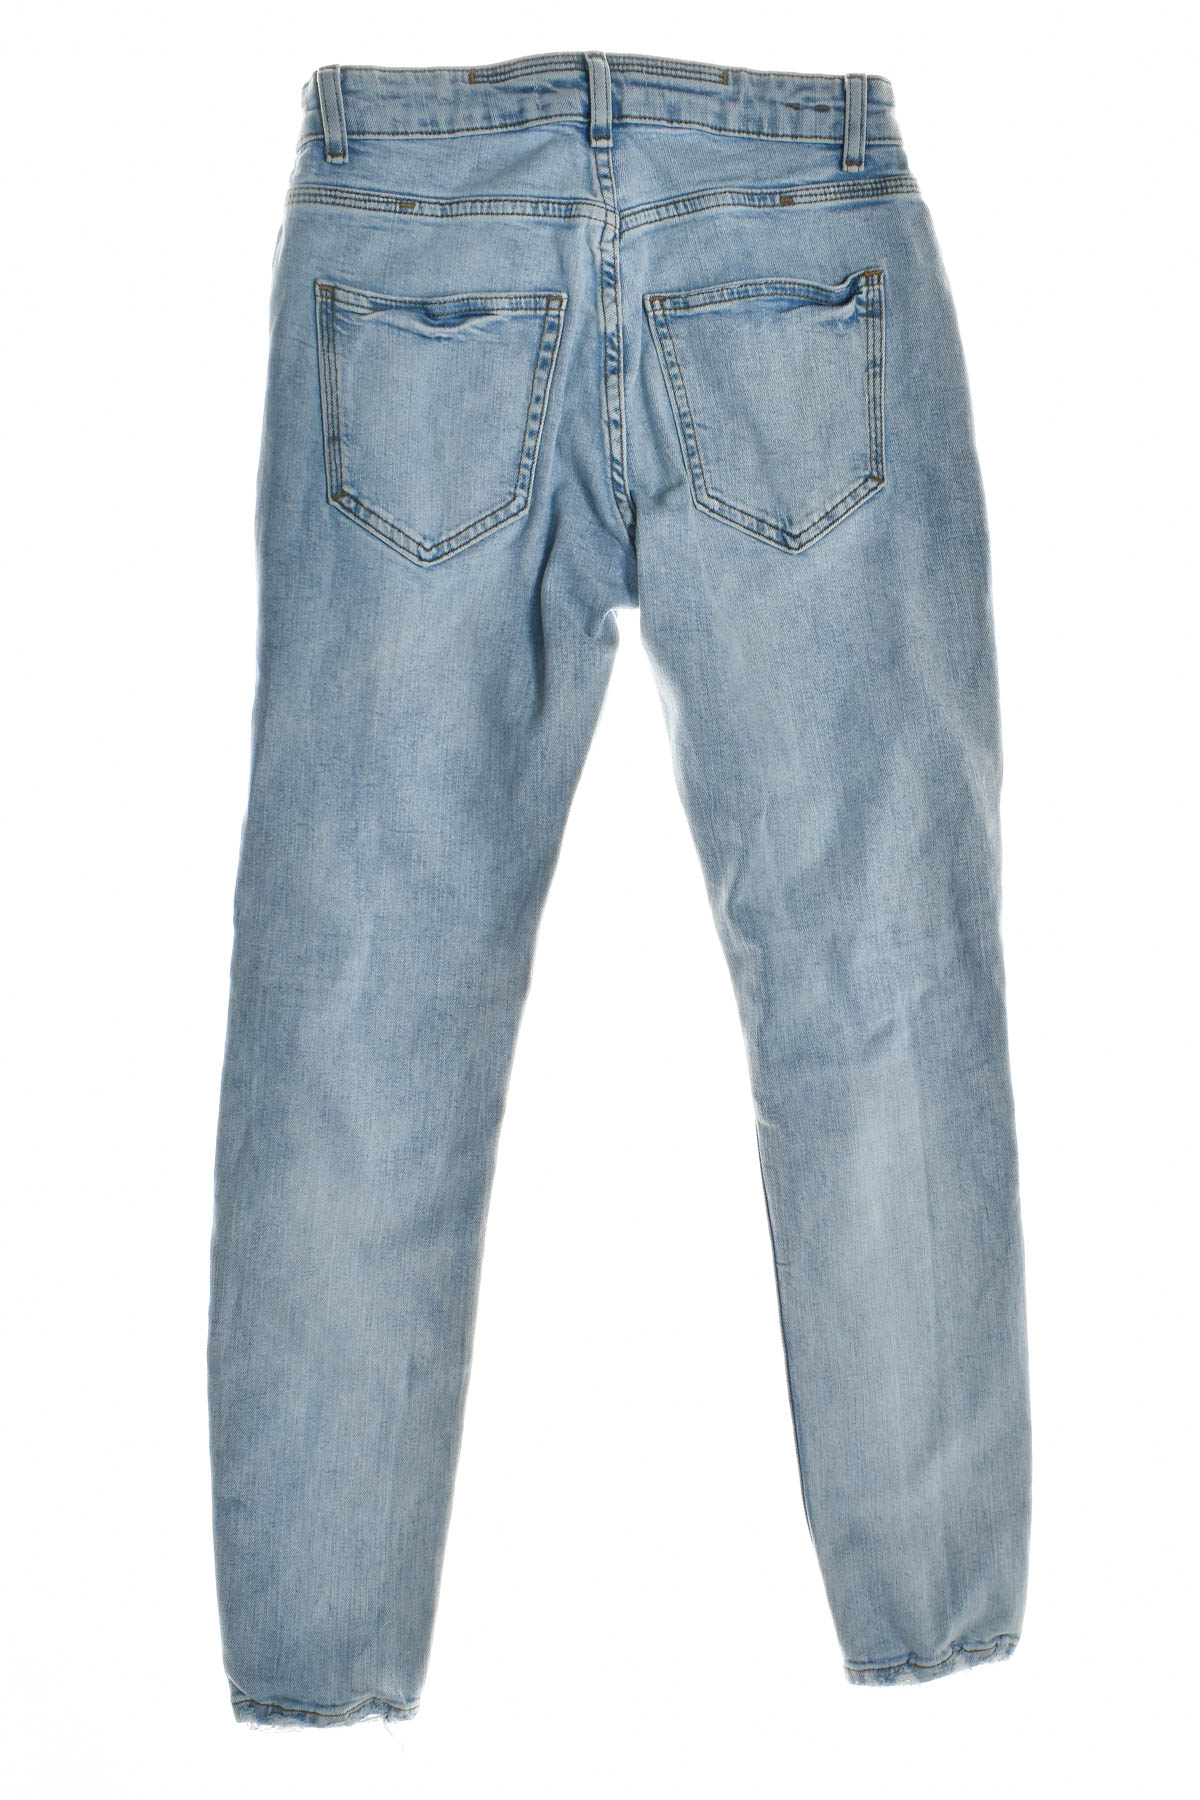 Men's jeans - ZARA - 1